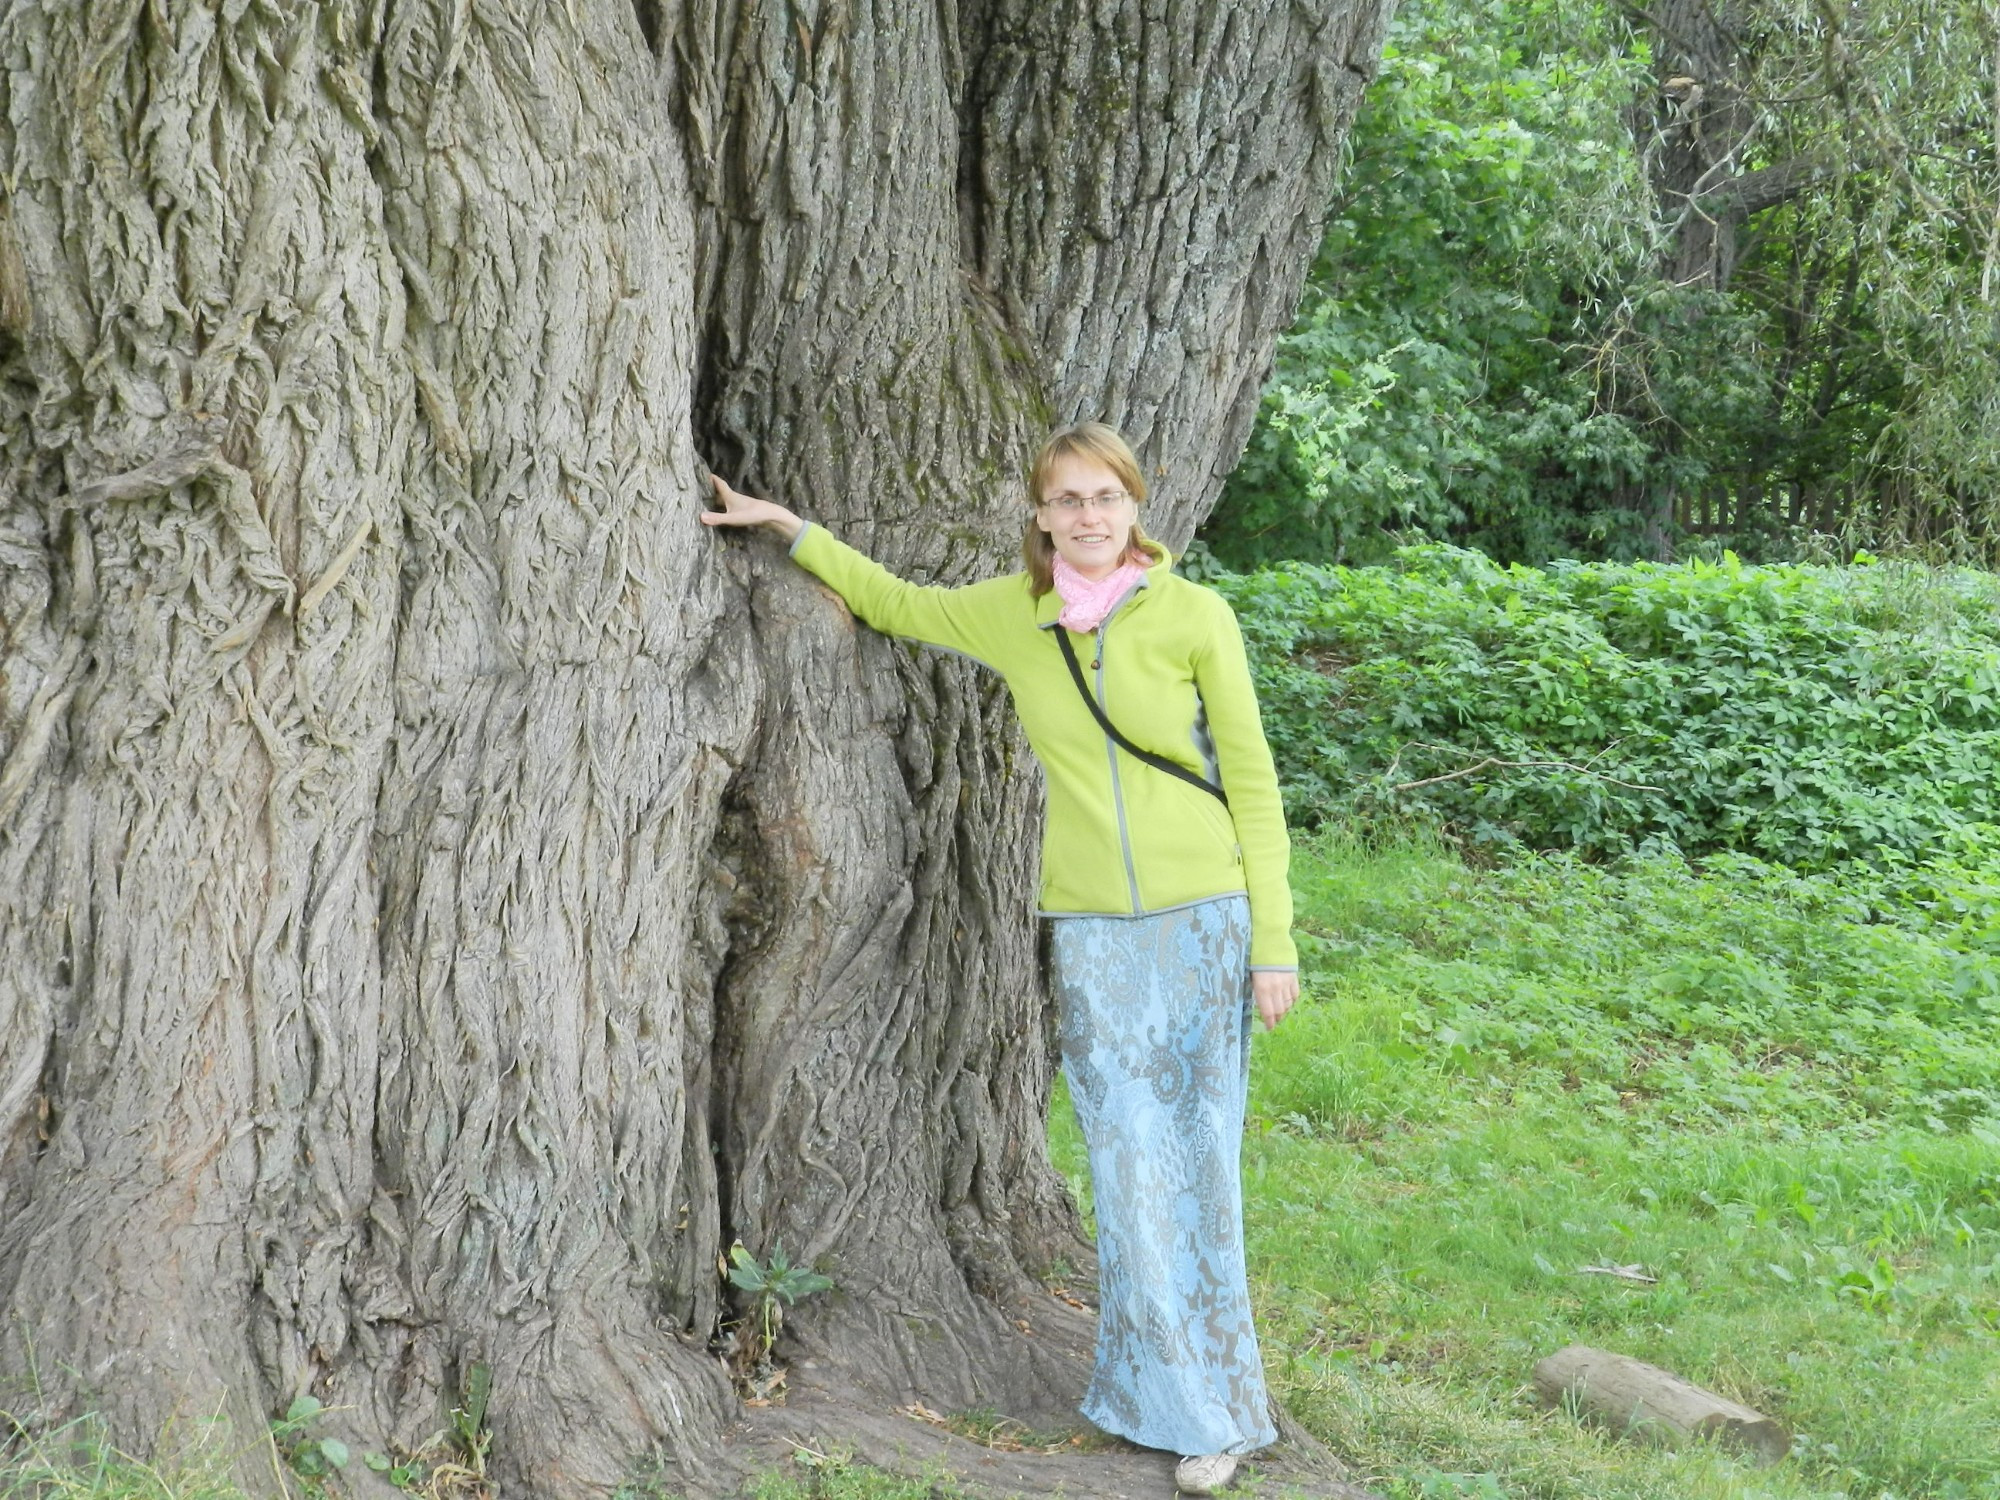 Моя жена возле очень старой ивы в парке (Болдино). Говорят, иве больше 100 лет